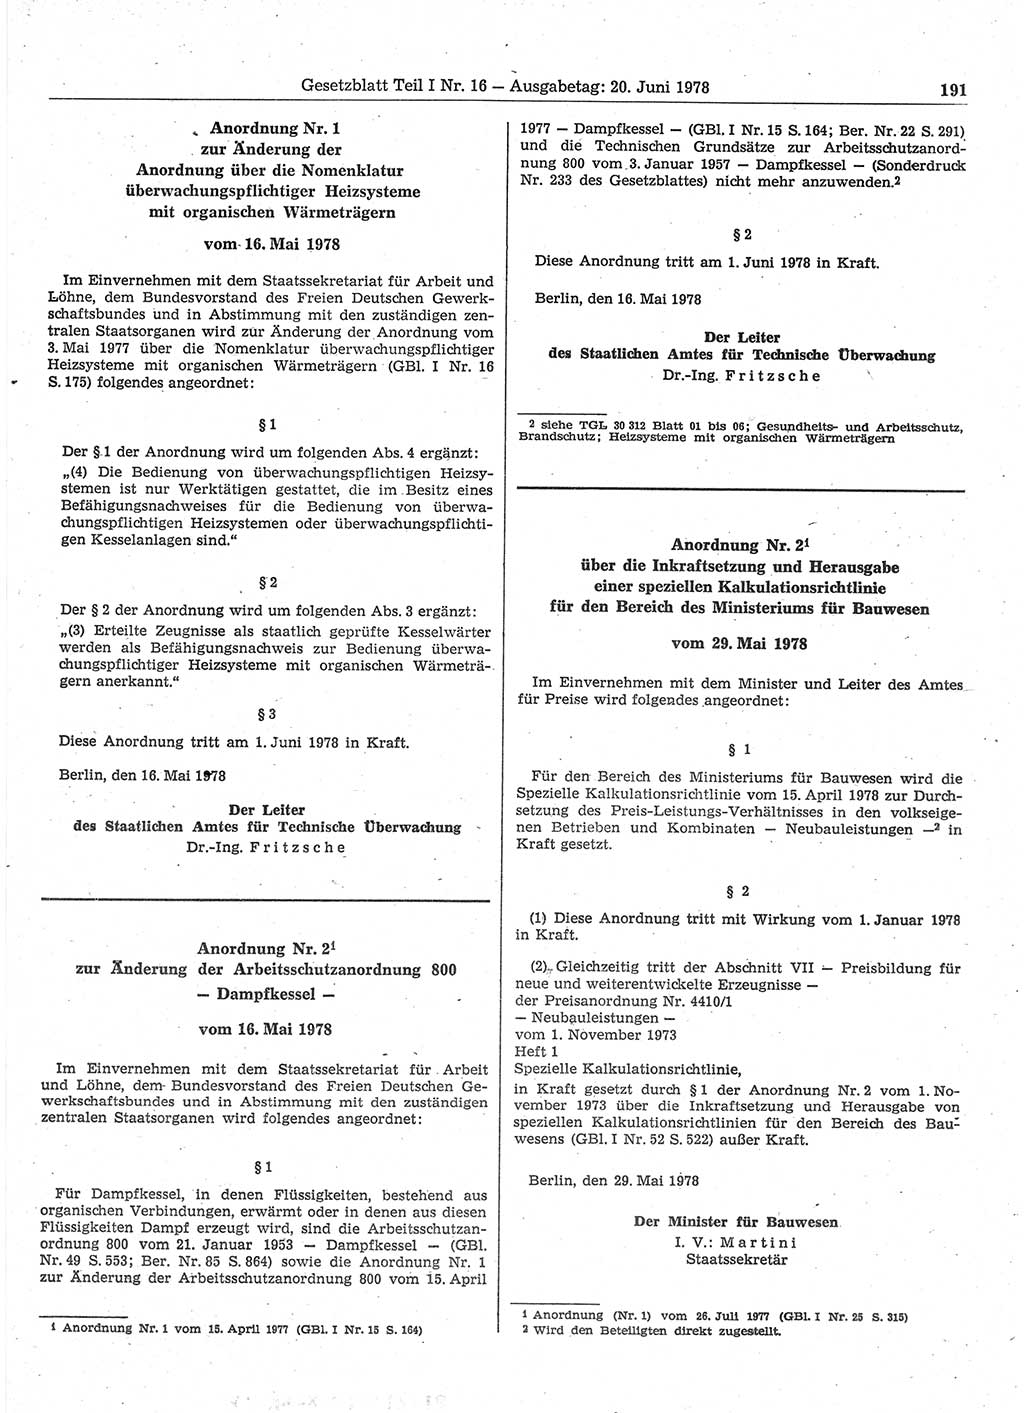 Gesetzblatt (GBl.) der Deutschen Demokratischen Republik (DDR) Teil Ⅰ 1978, Seite 191 (GBl. DDR Ⅰ 1978, S. 191)